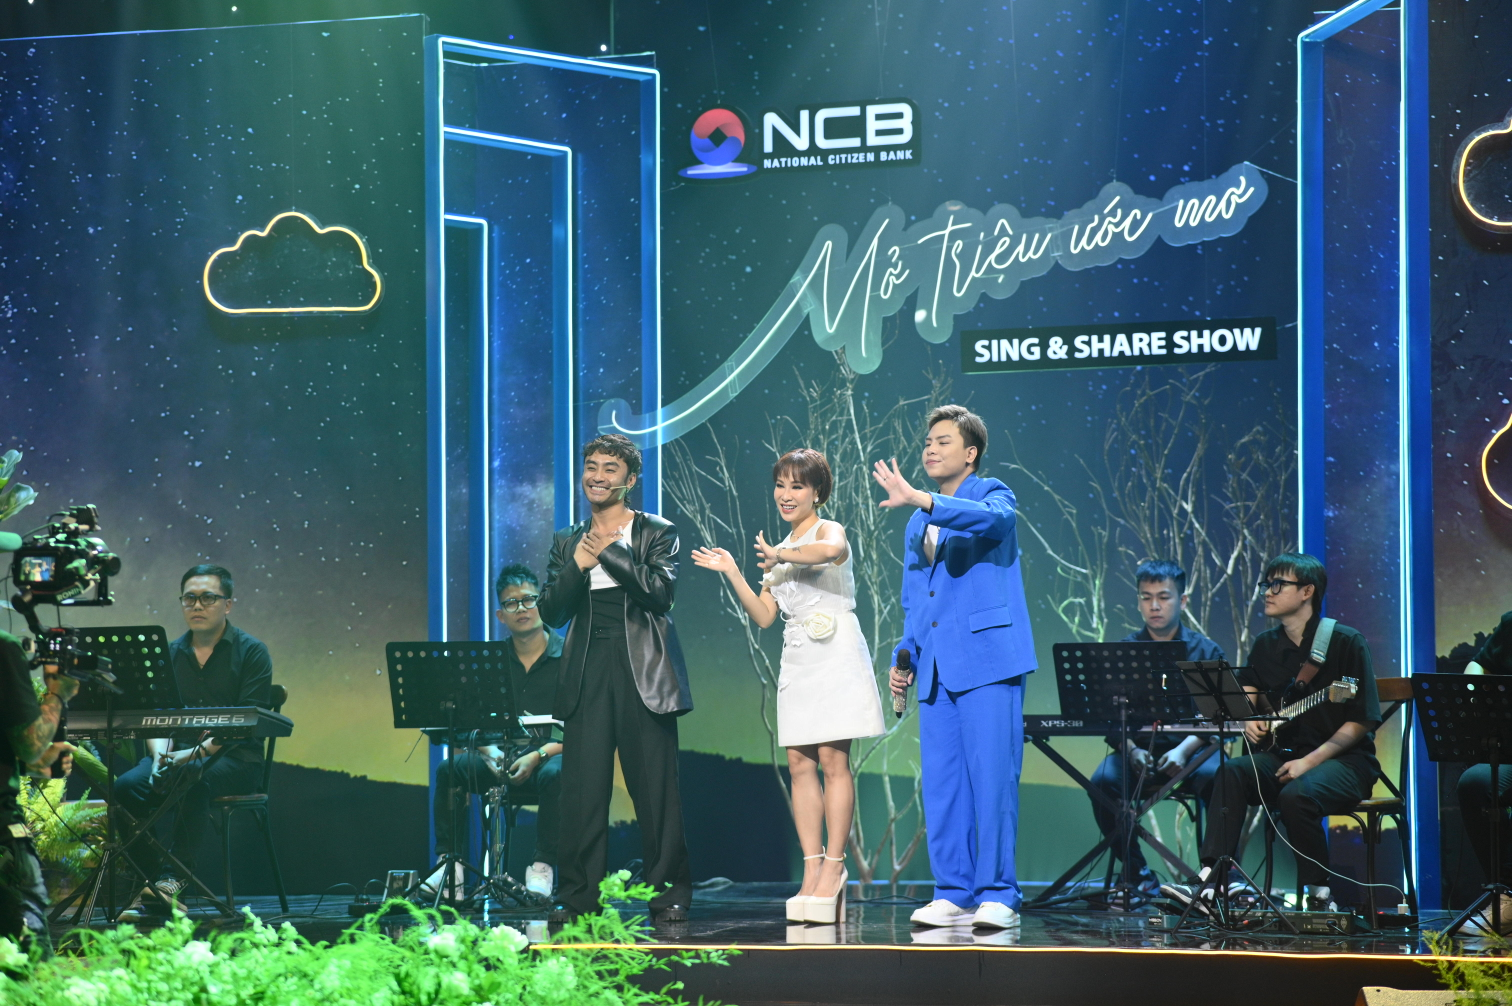 Kinh tế - Giải mã độ hot của “NCB Sing & Share Show - Mở triệu ước mơ” (Hình 3).